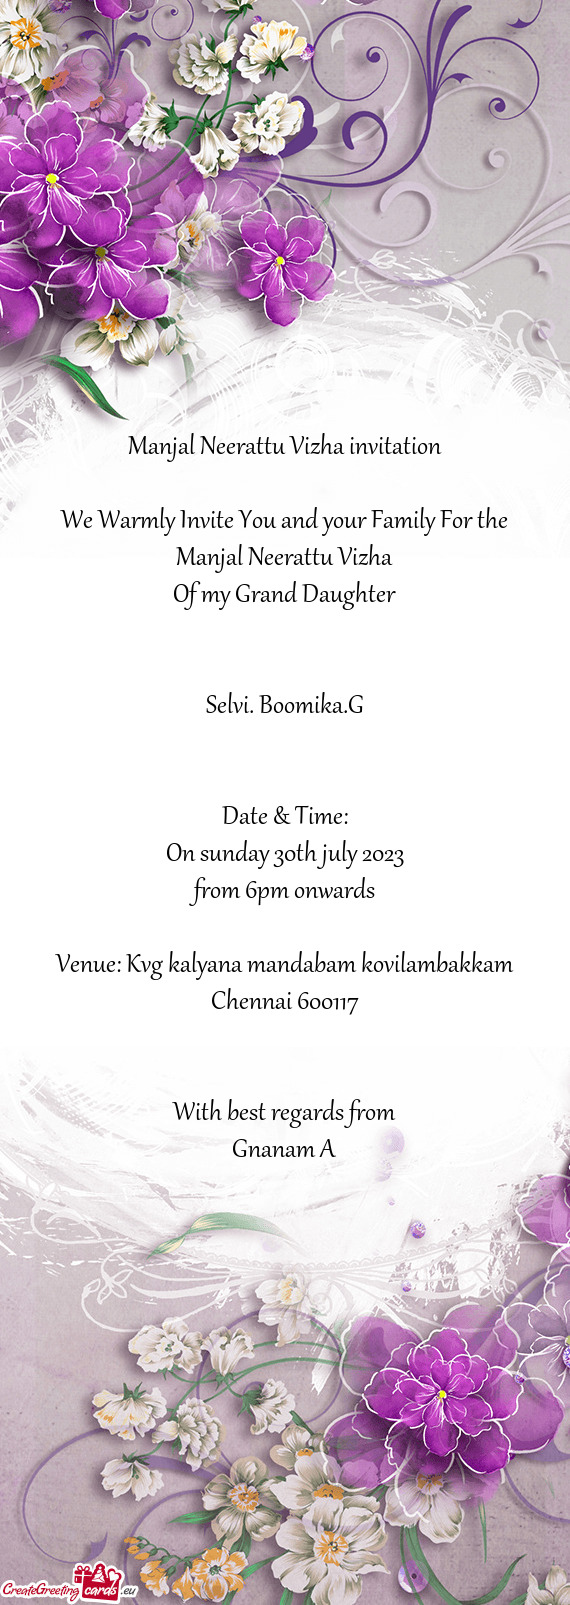 Venue: Kvg kalyana mandabam kovilambakkam Chennai 600117